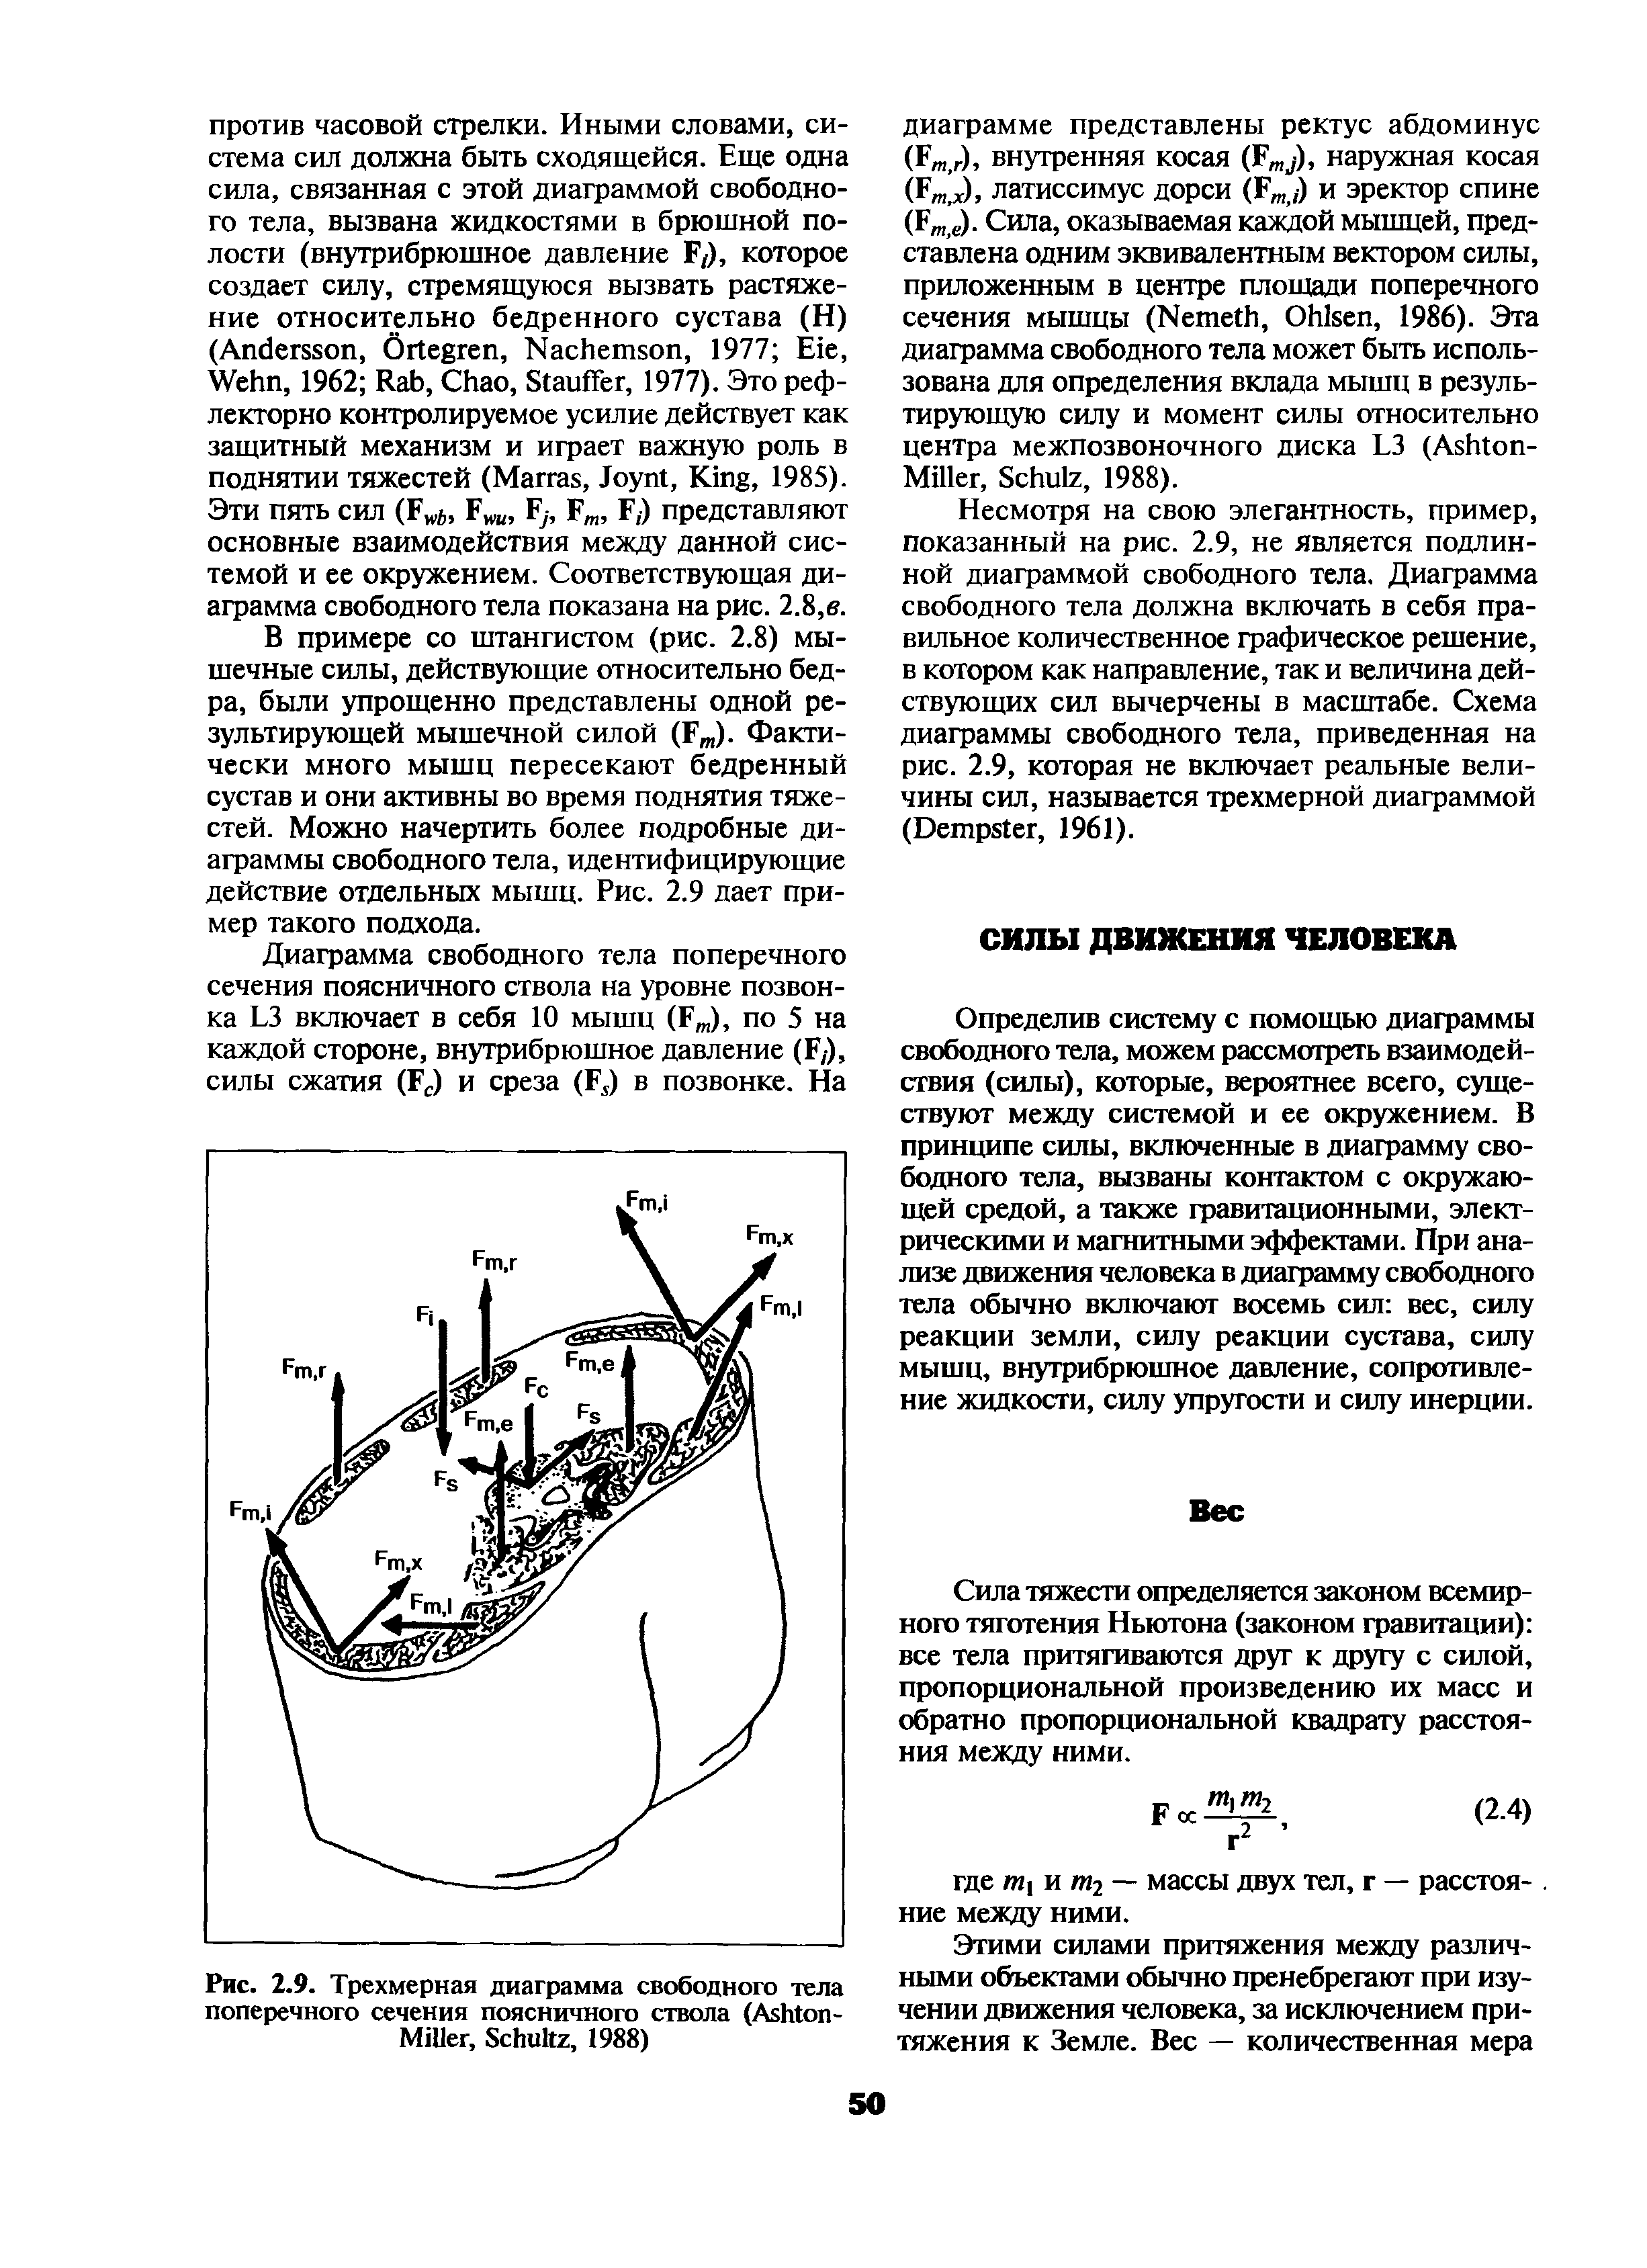 Рис. 2.9. Трехмерная диаграмма свободного тела поперечного сечения поясничного ствола (A -M , S , 1988)...